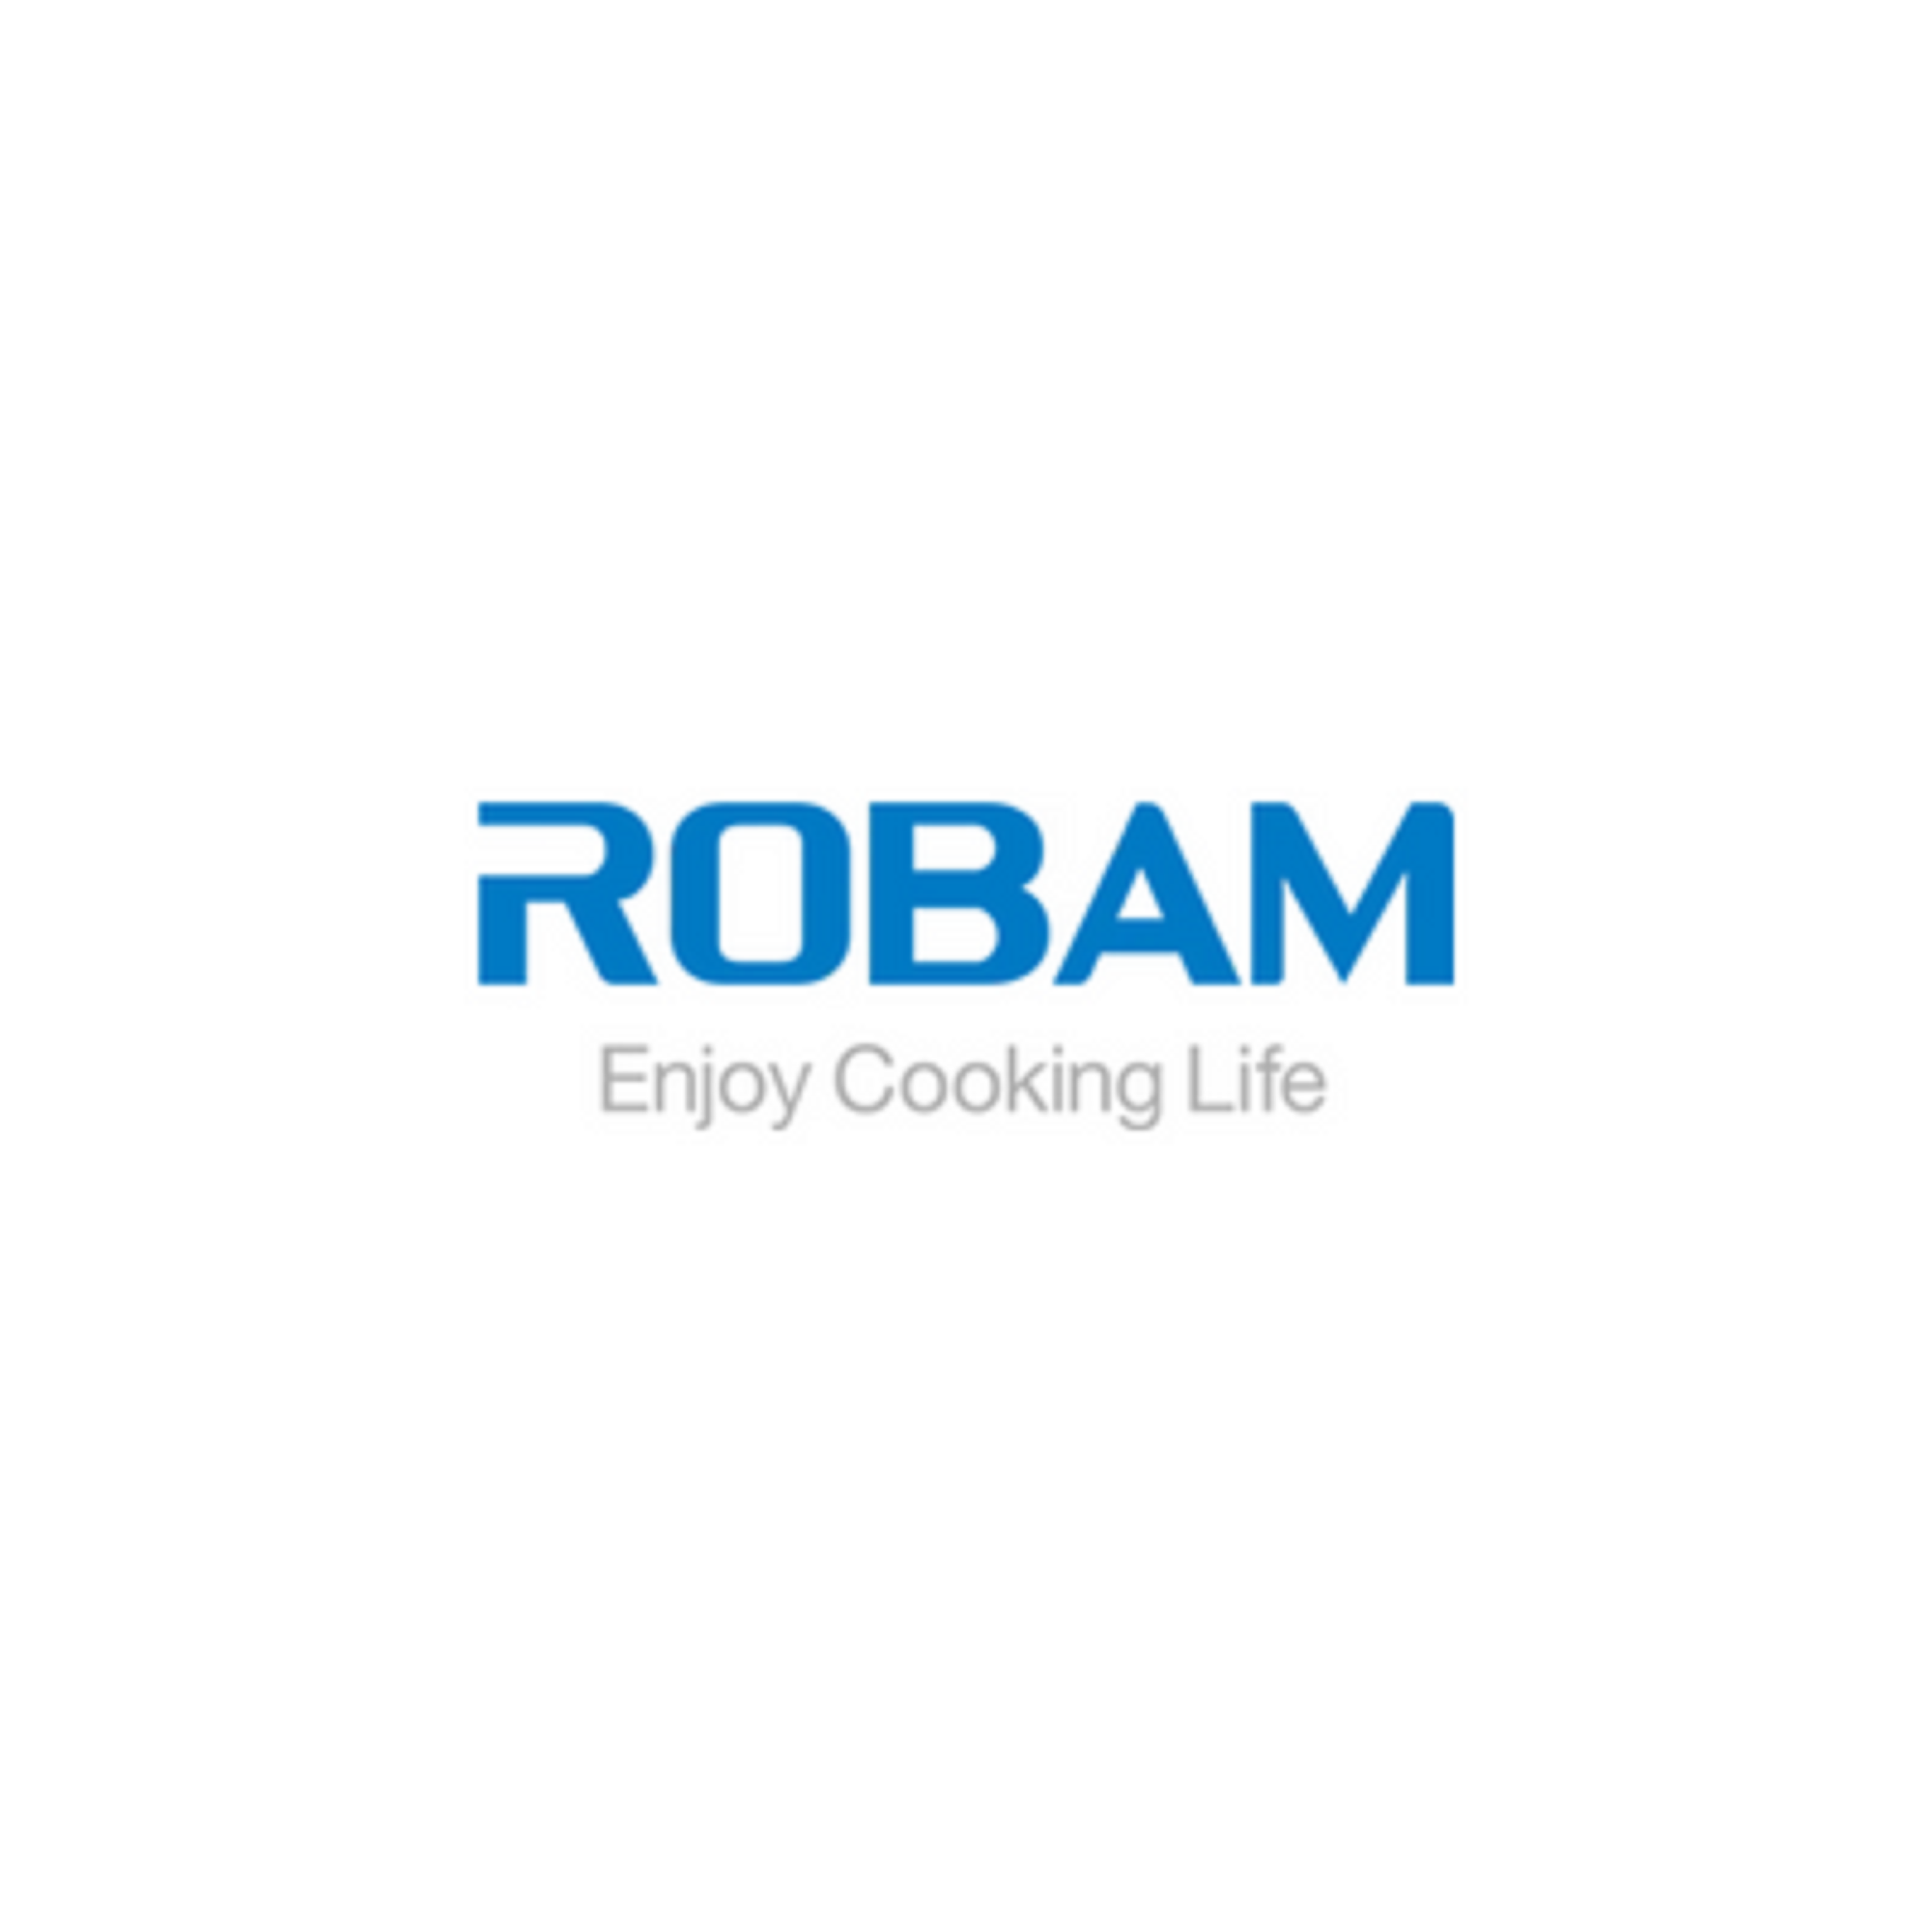 Robam Appliances